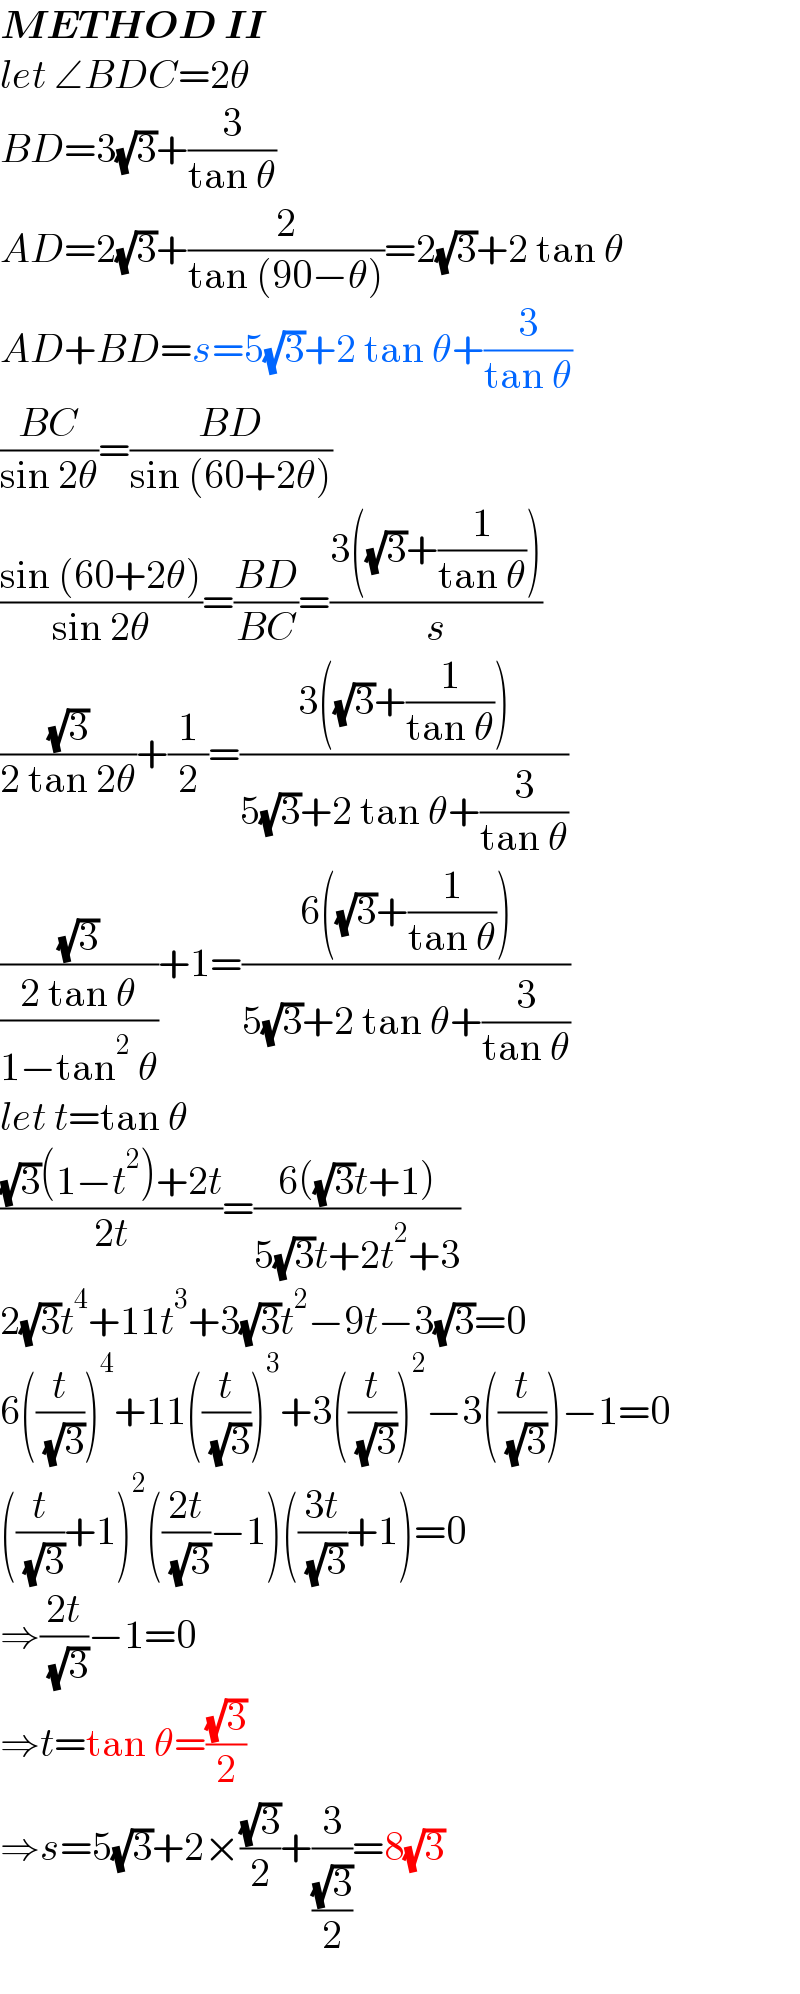 METHOD II  let ∠BDC=2θ  BD=3(√3)+(3/(tan θ))  AD=2(√3)+(2/(tan (90−θ)))=2(√3)+2 tan θ  AD+BD=s=5(√3)+2 tan θ+(3/(tan θ))  ((BC)/(sin 2θ))=((BD)/(sin (60+2θ)))  ((sin (60+2θ))/(sin 2θ))=((BD)/(BC))=((3((√3)+(1/(tan θ))))/s)  ((√3)/(2 tan 2θ))+(1/2)=((3((√3)+(1/(tan θ))))/(5(√3)+2 tan θ+(3/(tan θ))))  ((√3)/((2 tan θ)/(1−tan^2  θ)))+1=((6((√3)+(1/(tan θ))))/(5(√3)+2 tan θ+(3/(tan θ))))  let t=tan θ  (((√3)(1−t^2 )+2t)/(2t))=((6((√3)t+1))/(5(√3)t+2t^2 +3))  2(√3)t^4 +11t^3 +3(√3)t^2 −9t−3(√3)=0  6((t/( (√3))))^4 +11((t/( (√3))))^3 +3((t/( (√3))))^2 −3((t/( (√3))))−1=0  ((t/( (√3)))+1)^2 (((2t)/( (√3)))−1)(((3t)/( (√3)))+1)=0  ⇒((2t)/( (√3)))−1=0  ⇒t=tan θ=((√3)/2)  ⇒s=5(√3)+2×((√3)/2)+(3/((√3)/2))=8(√3)  